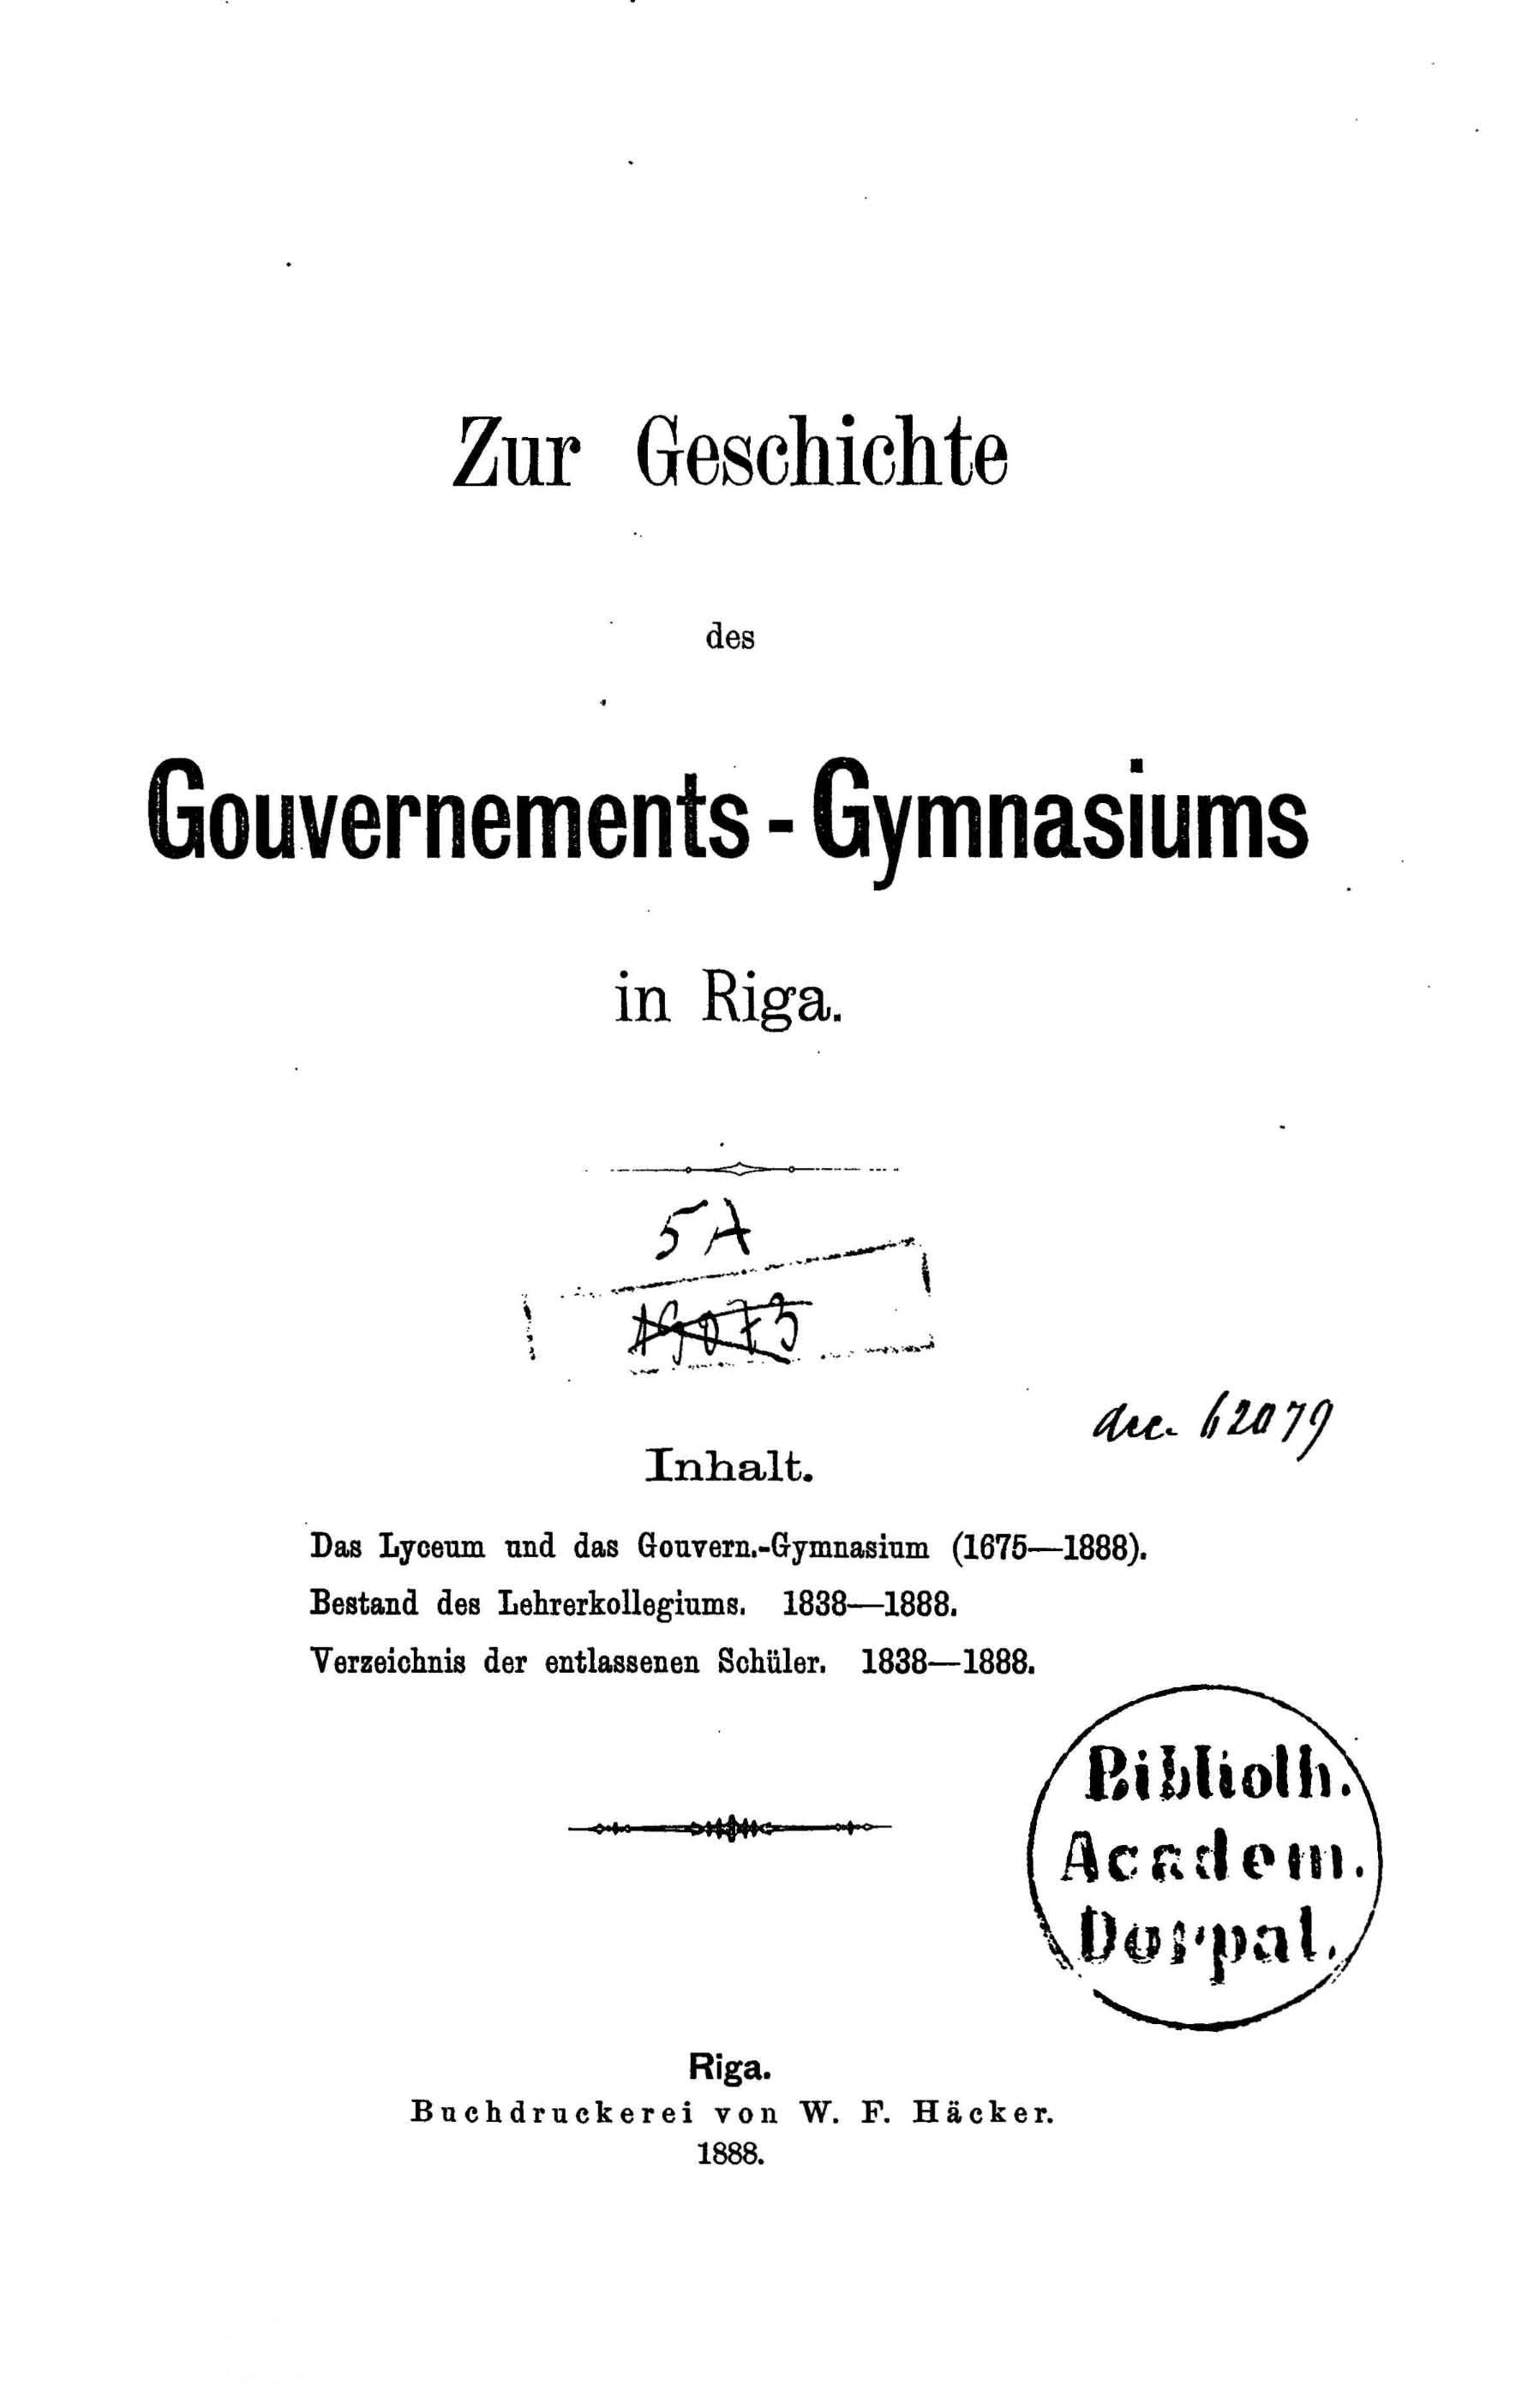 Zur Geschichte des Gouvernements-Gymnasiums in Riga (1888) | 2. Title page